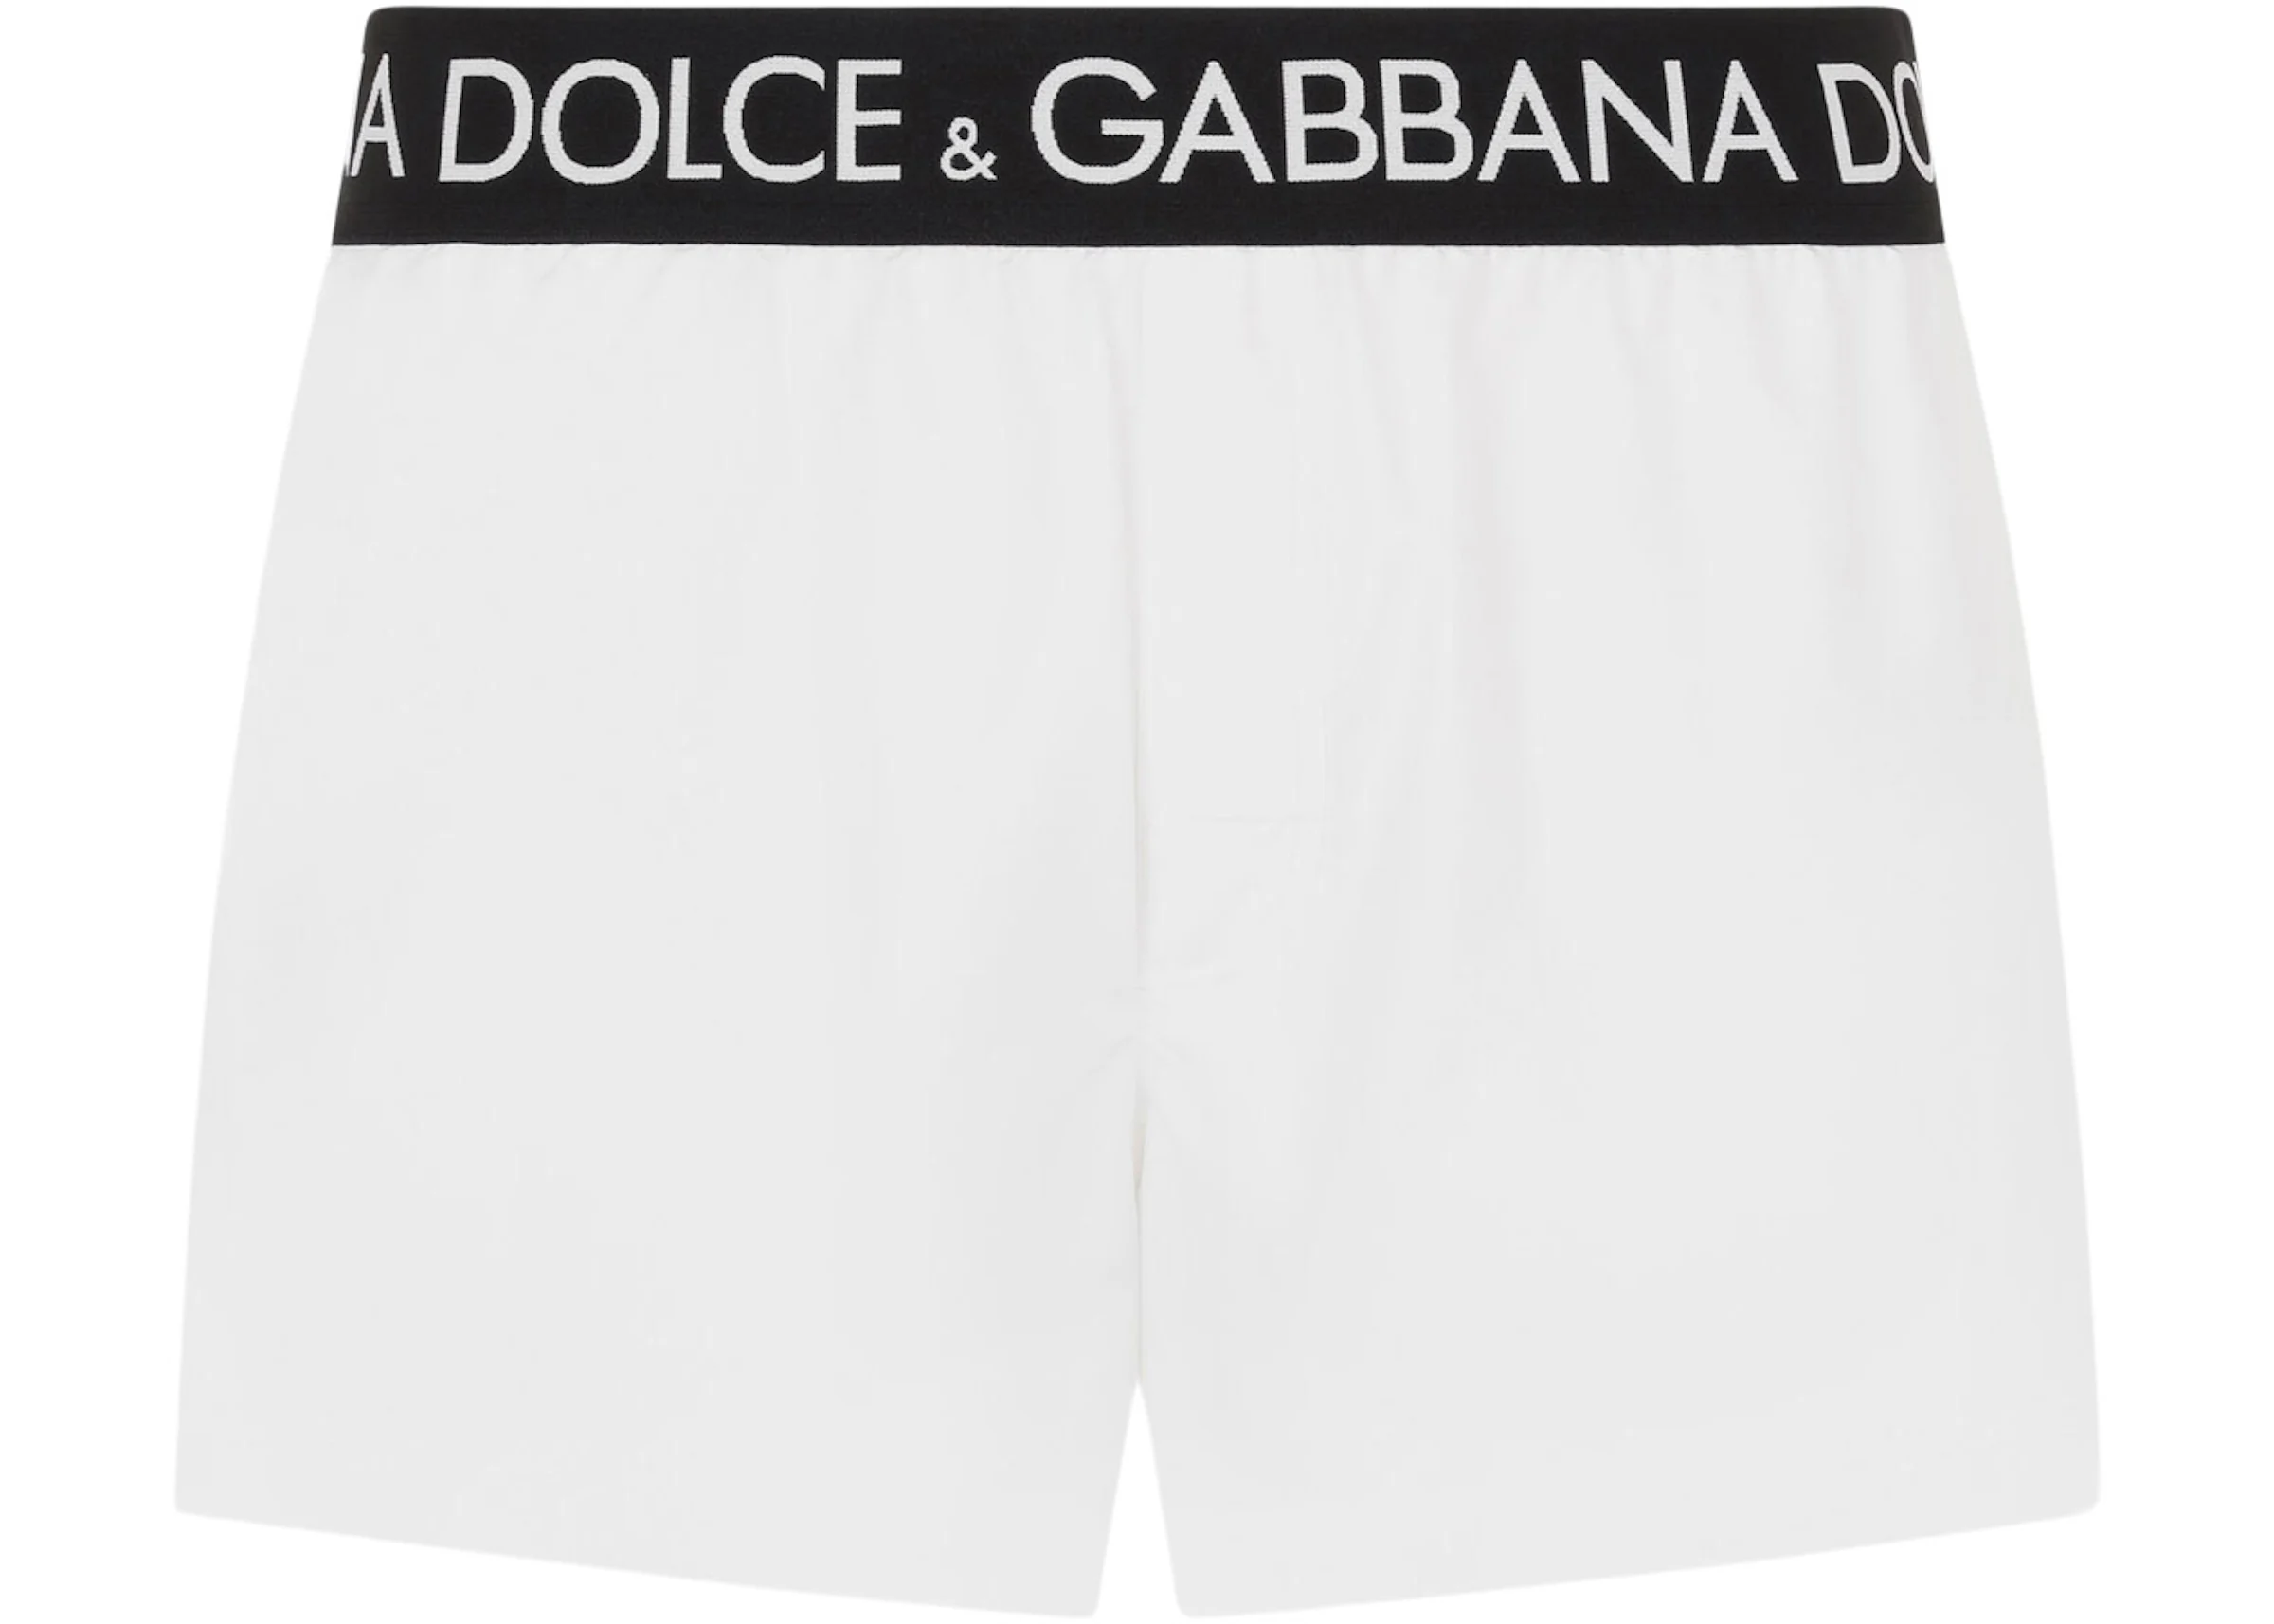 Dolce & Gabbana Logo Band Swim Shorts White/Black/White Men's